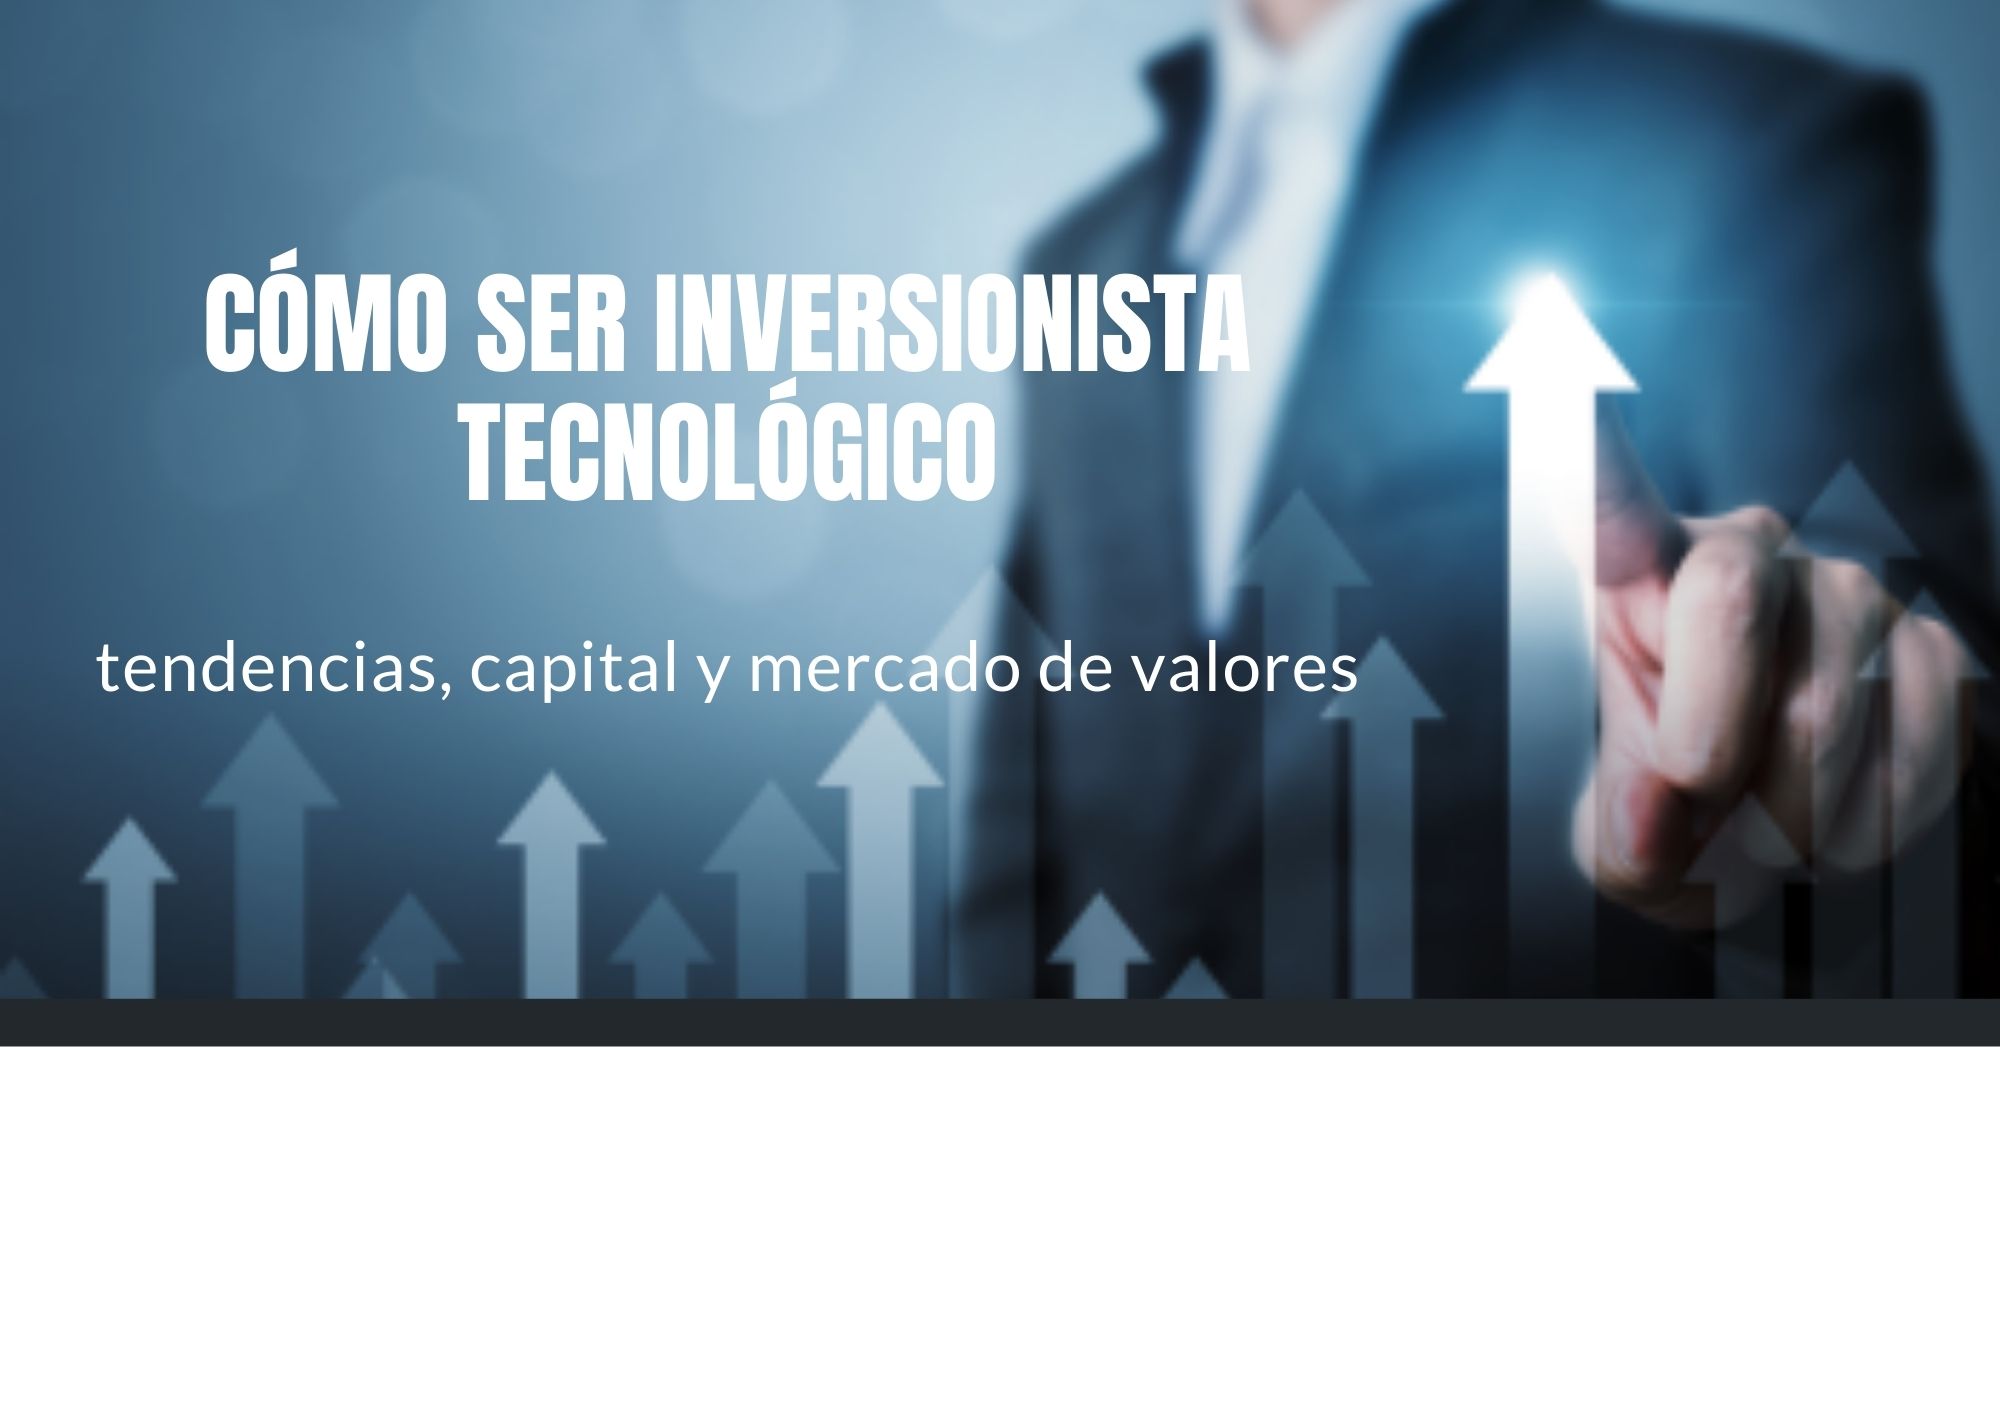 Curso Especializado
Guía para convertirse en un inversionista especializado en tecnologías de información 